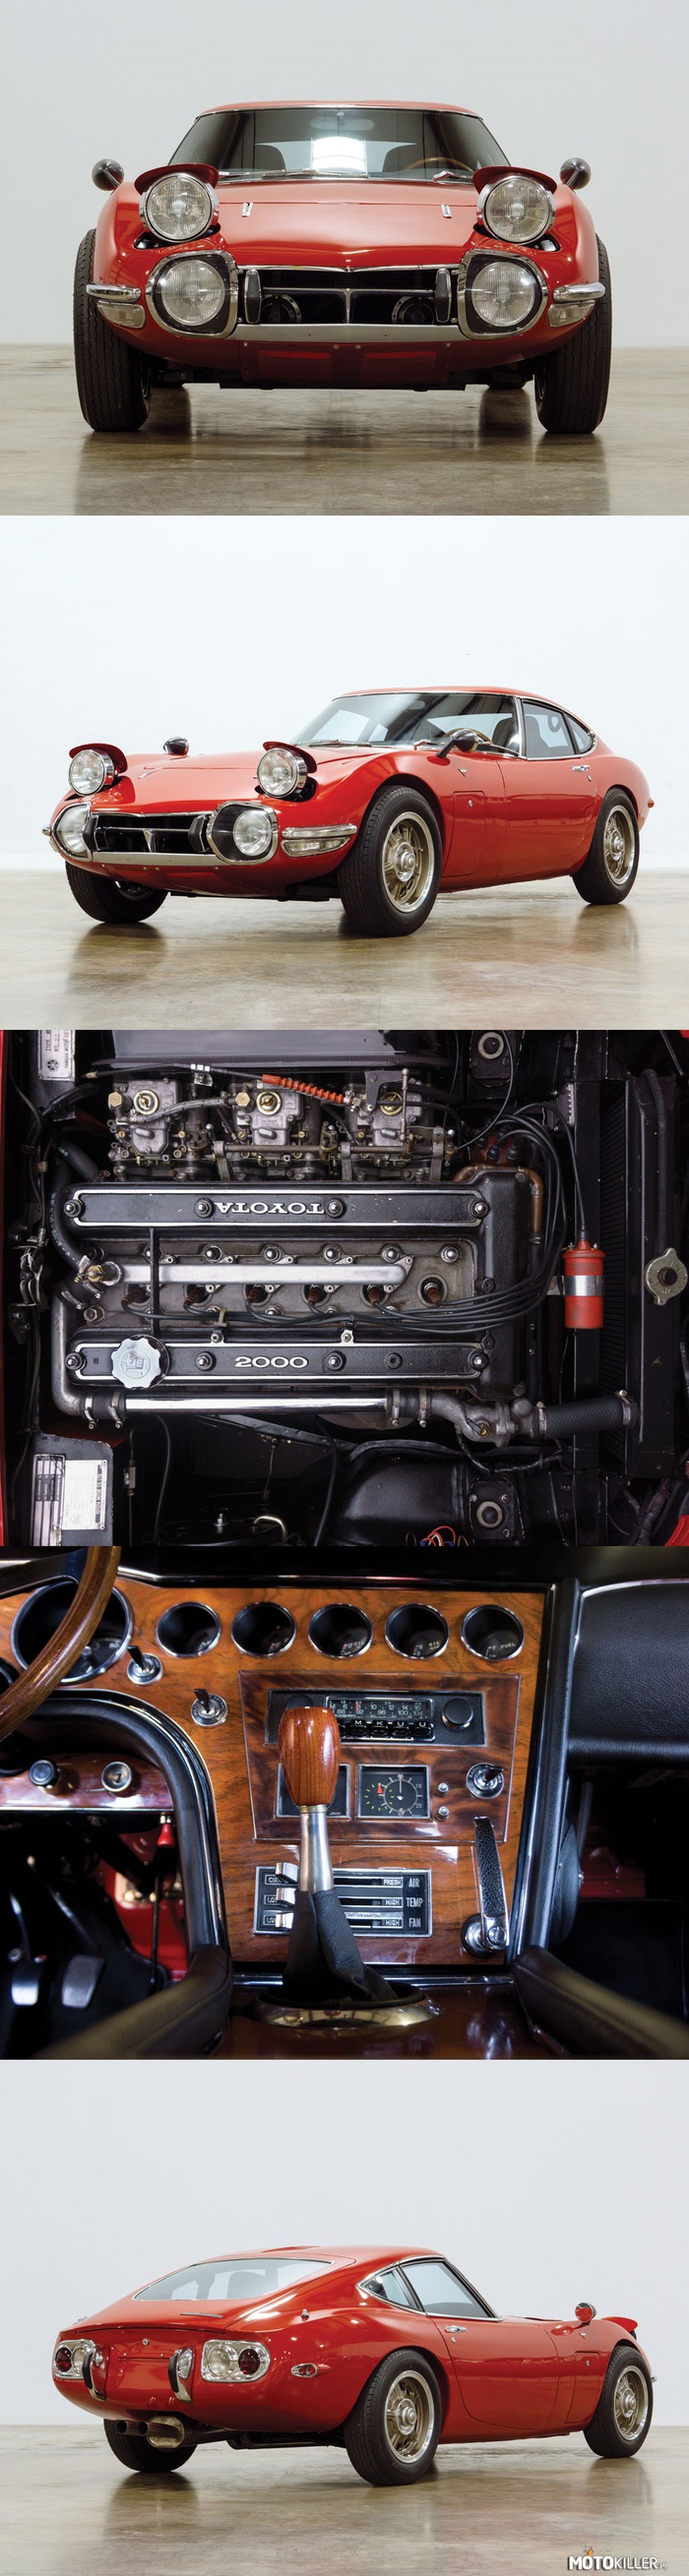 Toyota 2000 GT 1968 – Silnik 2.0L DOHC 150 KM na 5 stopniowej, manualnej skrzyni z nadbiegiem. Powstało ich zaledwie 351, z czego tylko 84 egzemplarze otrzymały kierownicę po lewej stronie. Dziś to najprawdopodobniej najbardziej pożądany przez kolekcjonerów samochód produkcji japońskiej. Jego ceny oscylują wokół miliona dolarów. 